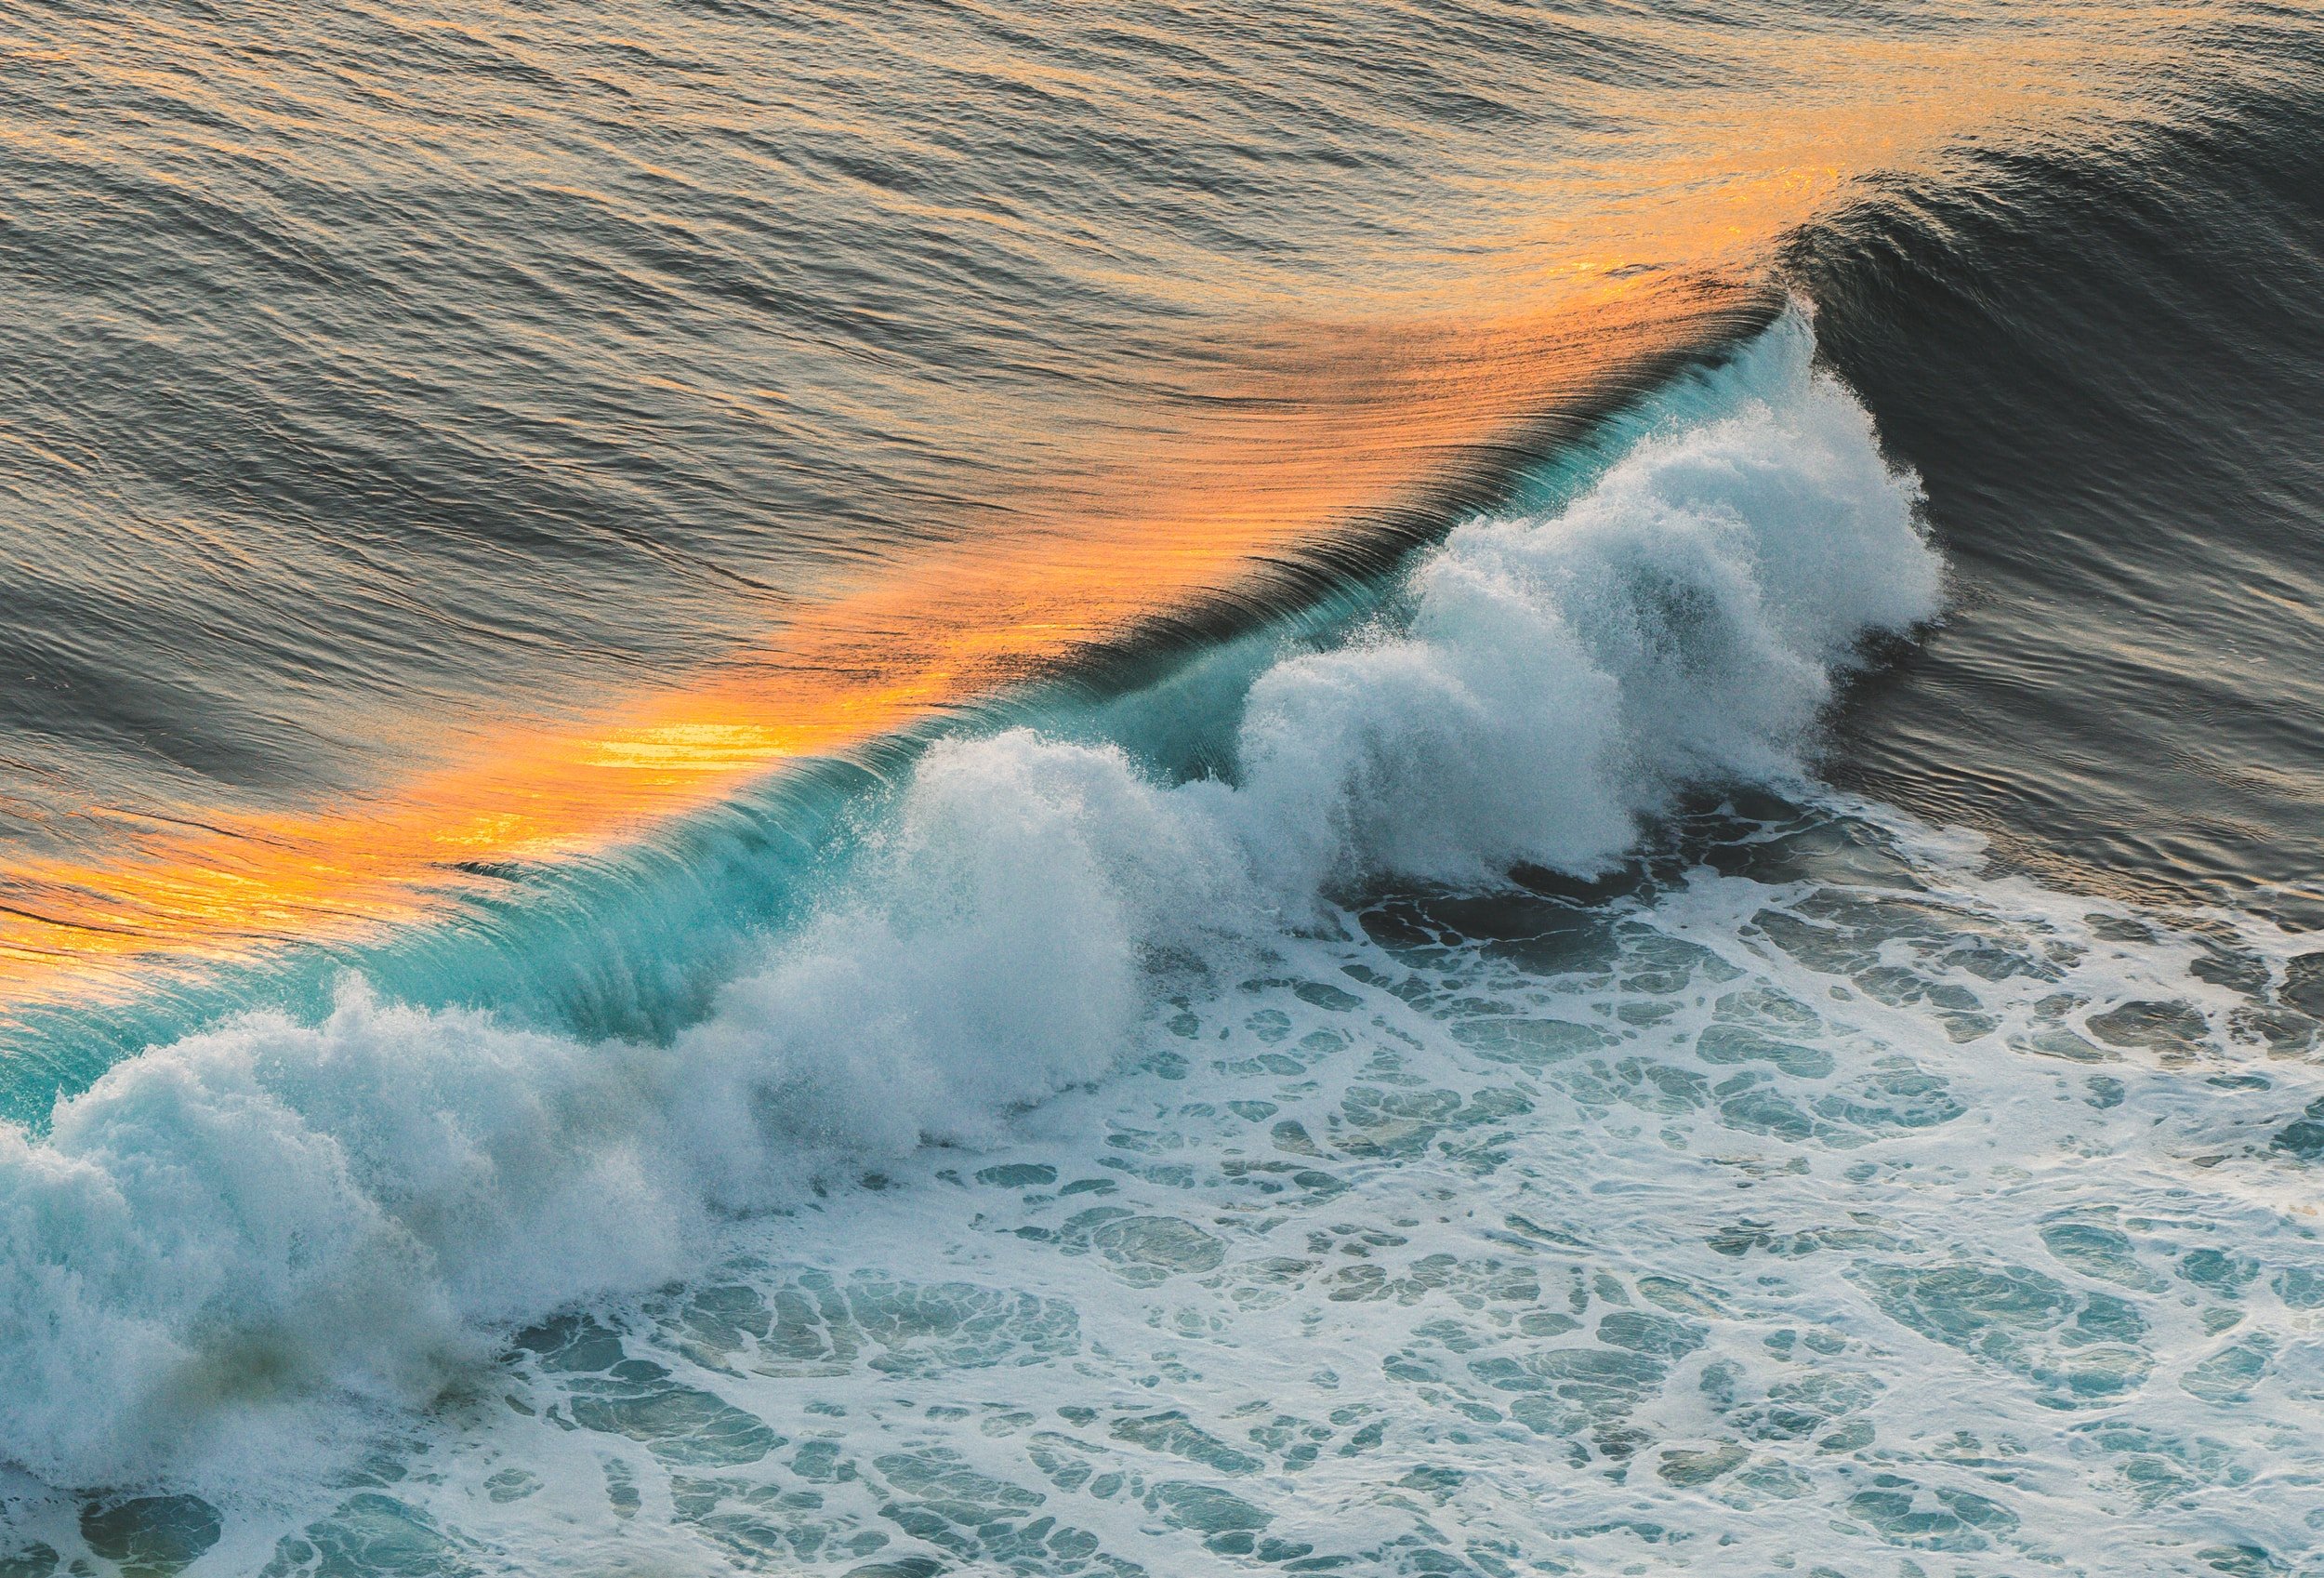 A crashing ocean wave.